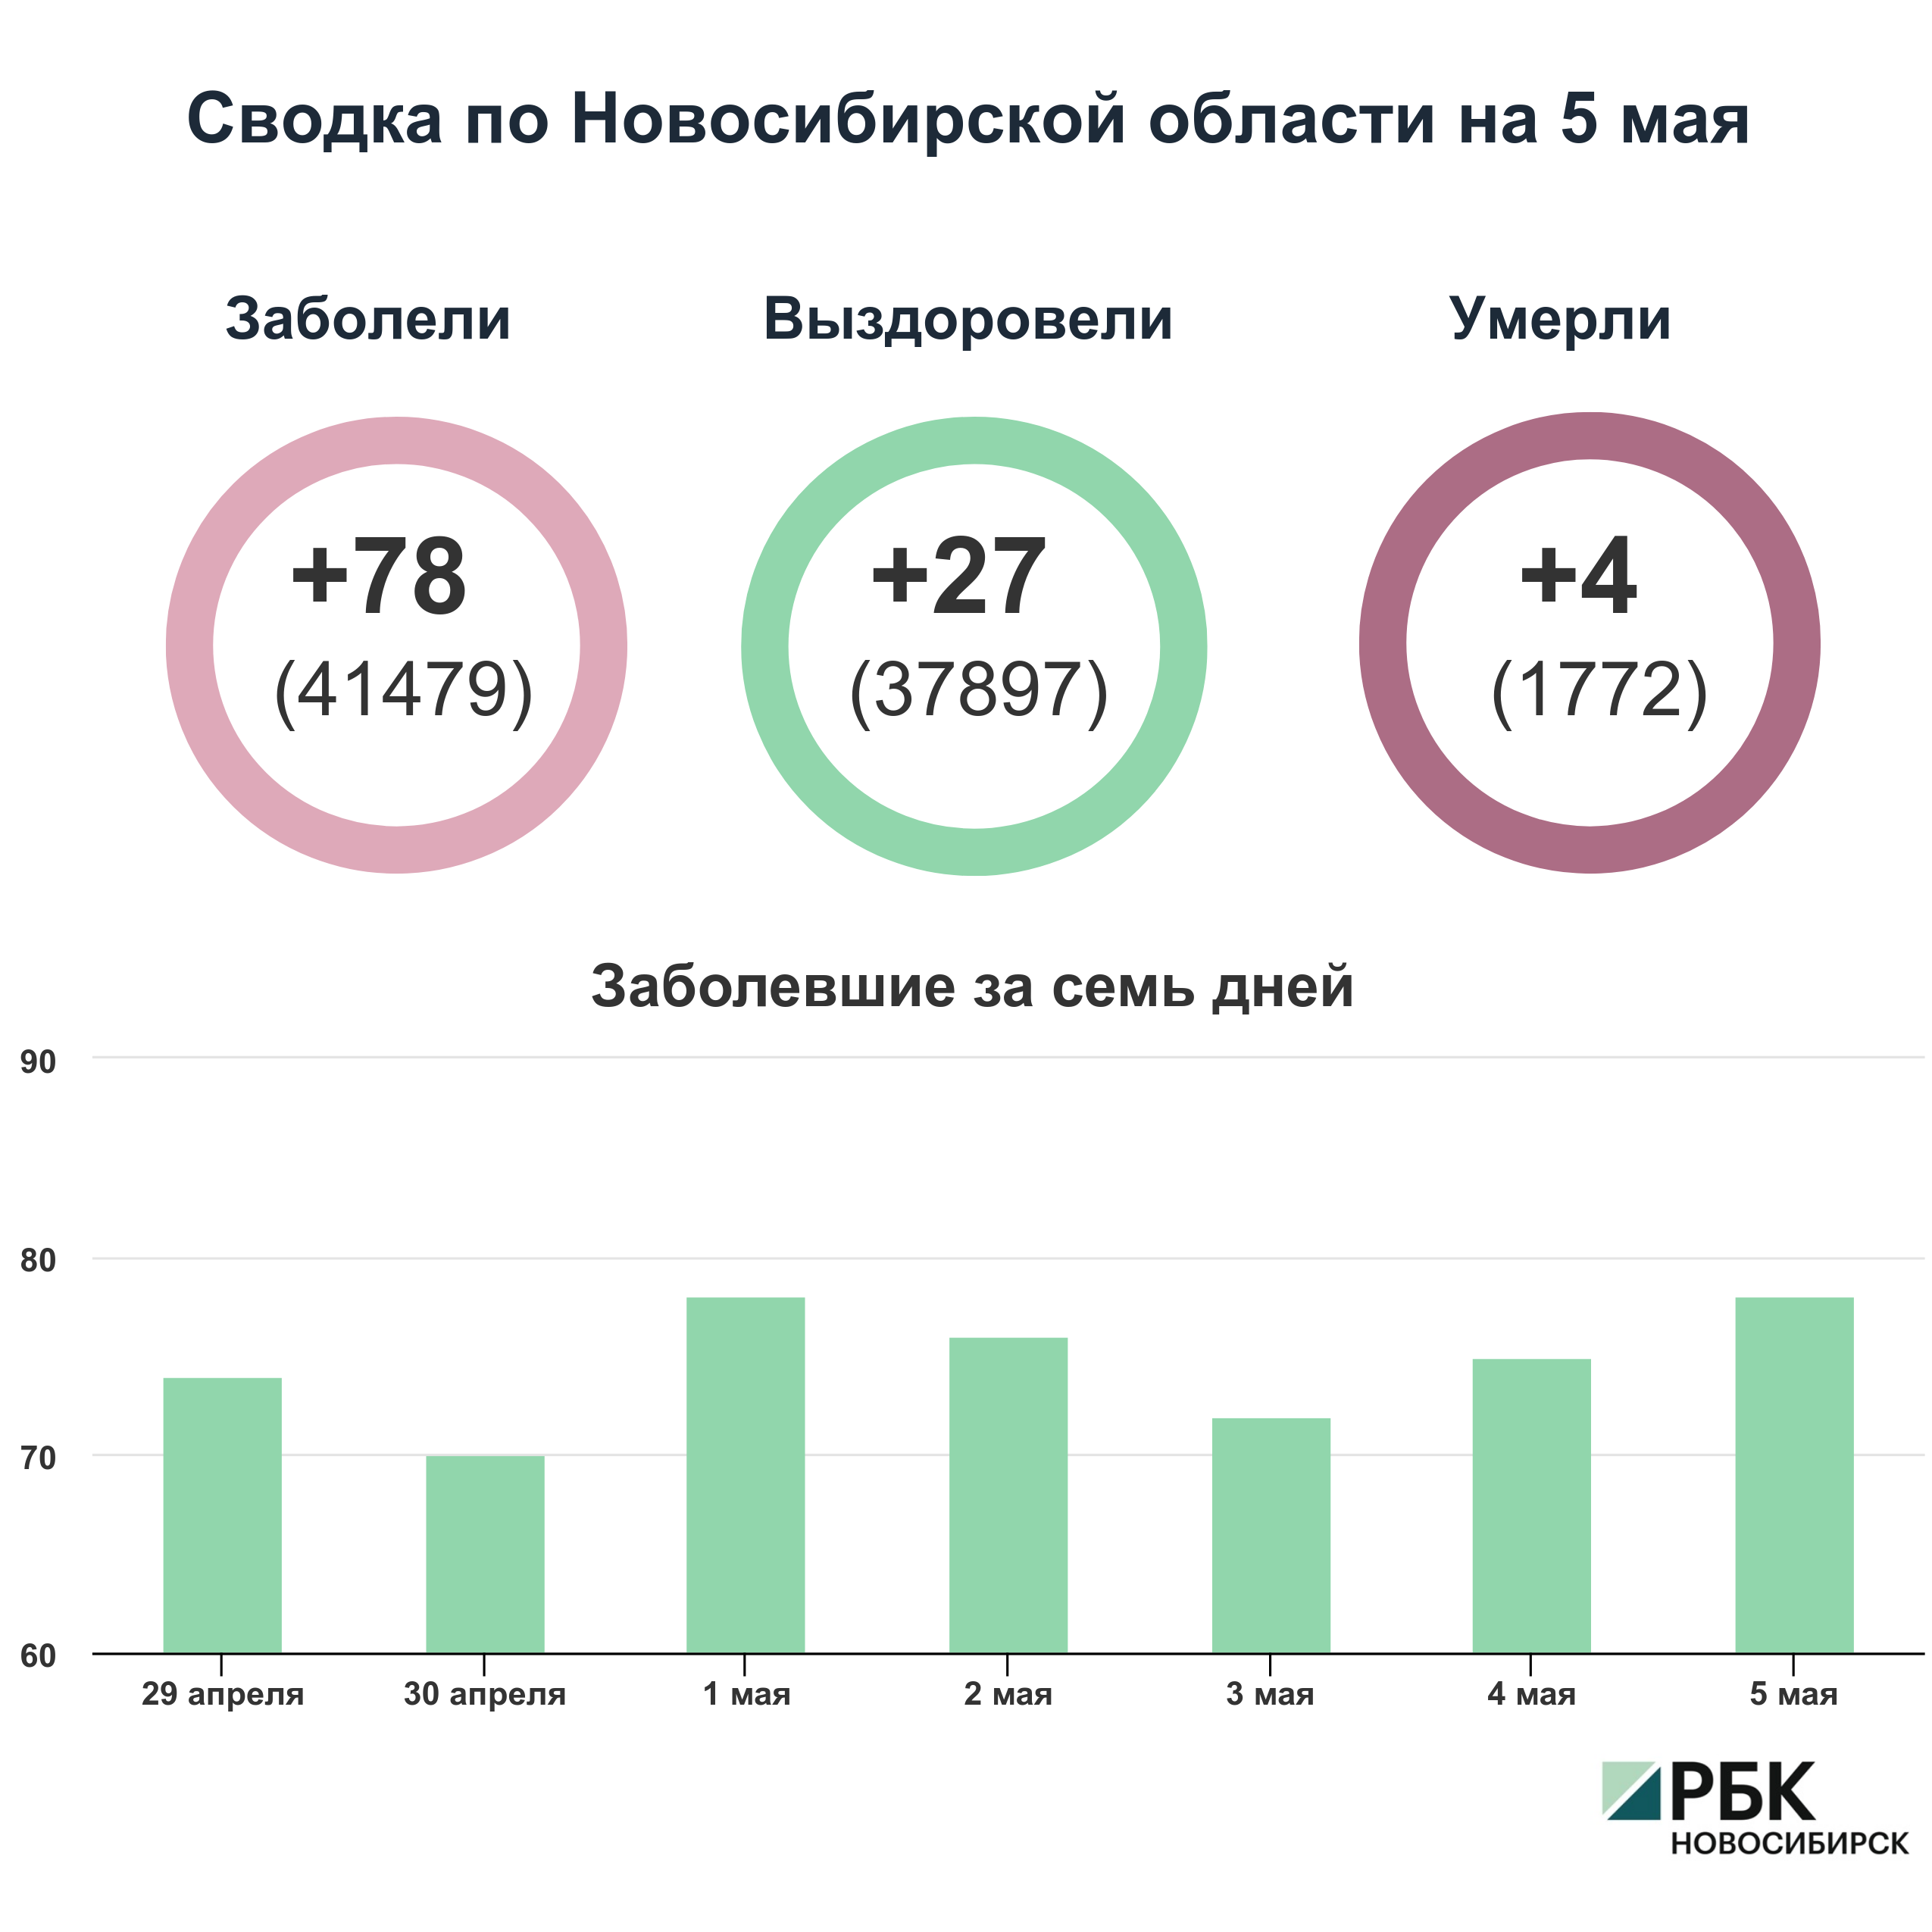 Коронавирус в Новосибирске: сводка на 5 мая